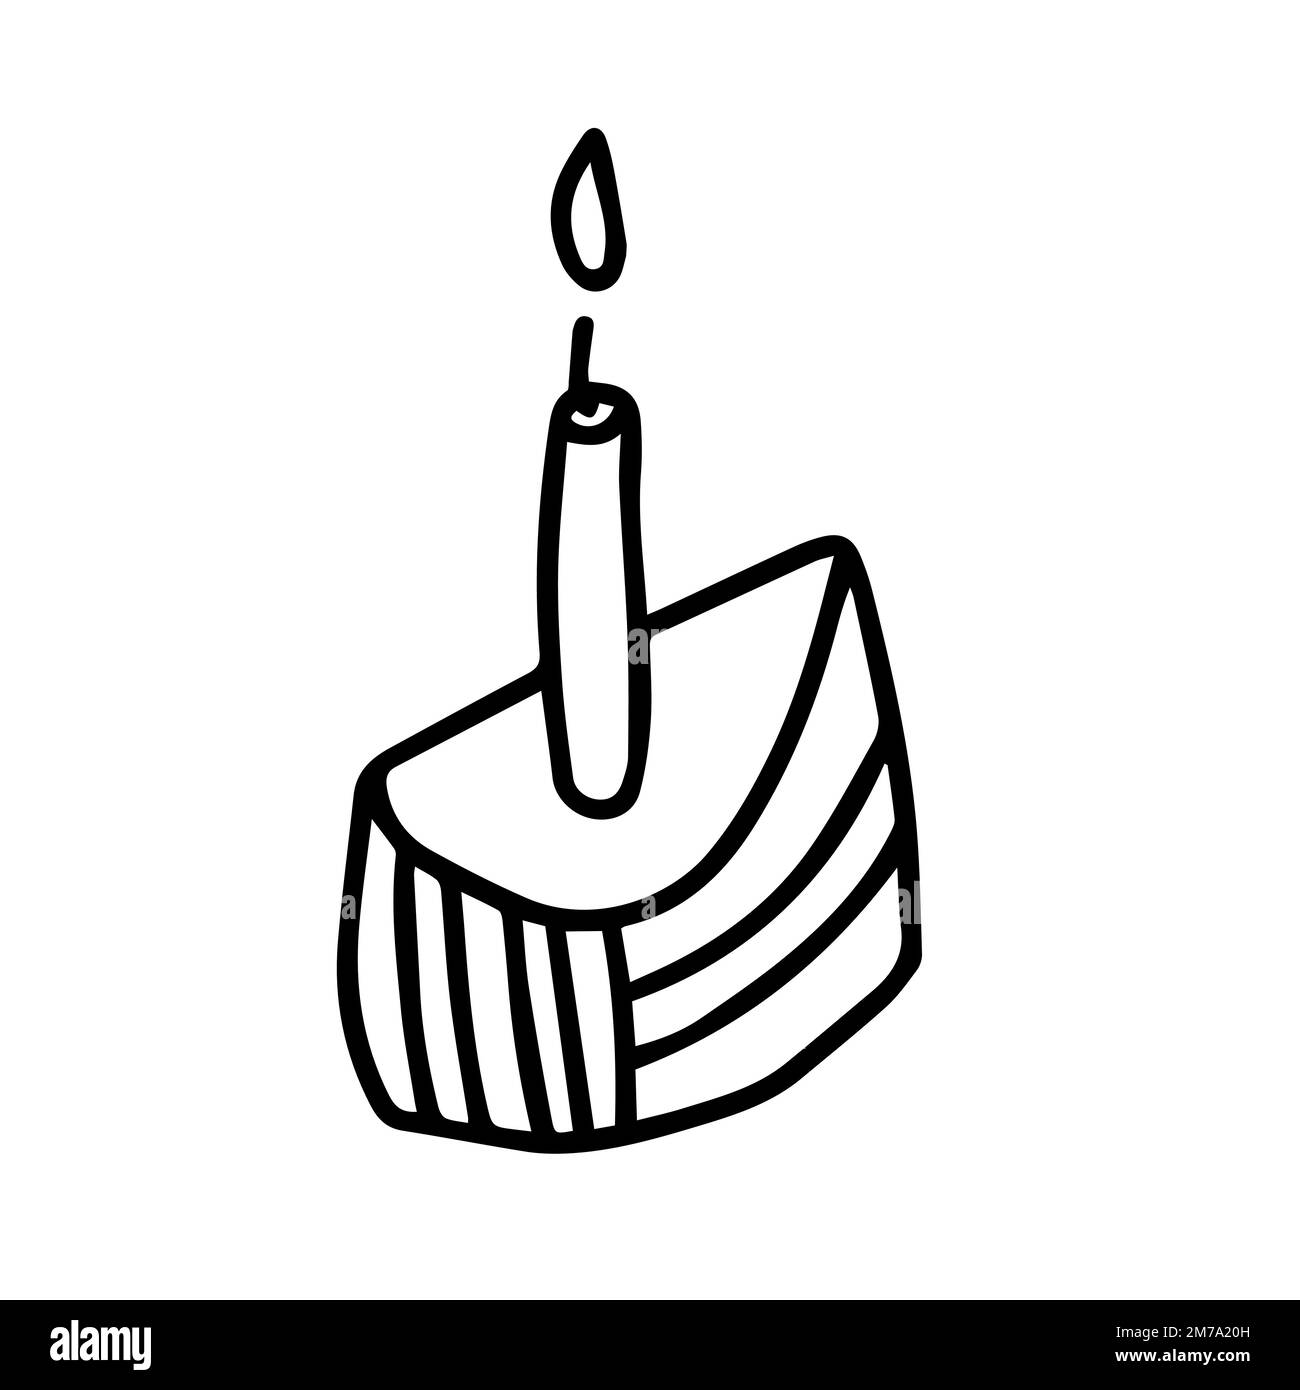 Happy birthday slice of cake Stock Vector